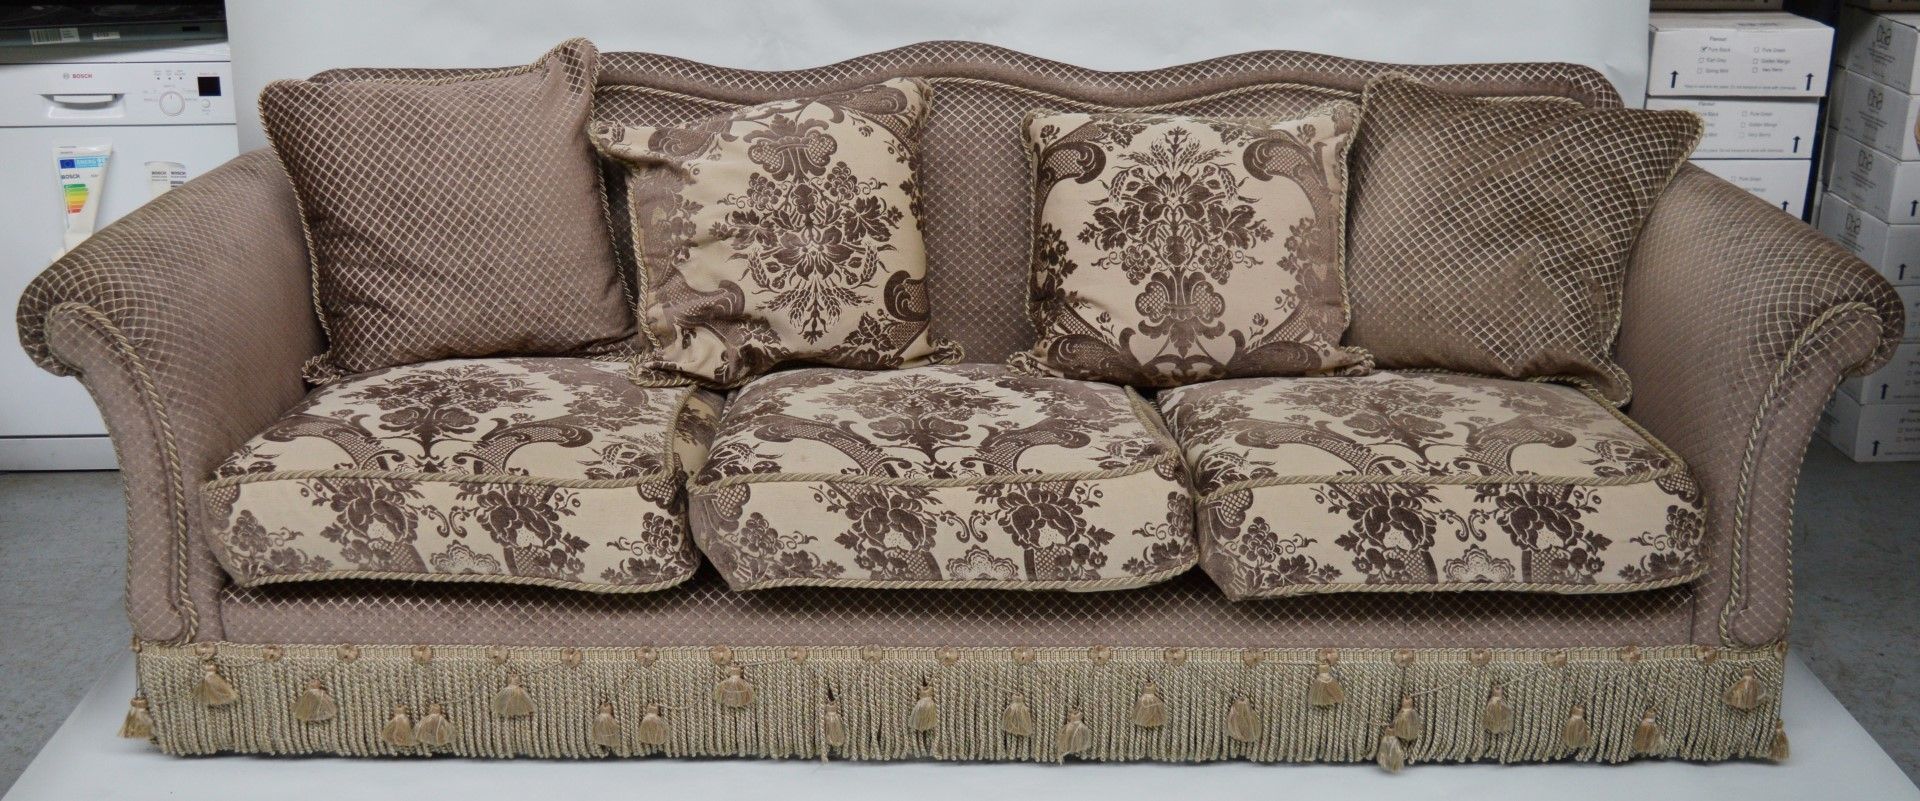 1 x Parker & Farr Abigail Special Sofa - Dimensions W240 x H87 x D89cm - Ref: 4081161 - CL087 -